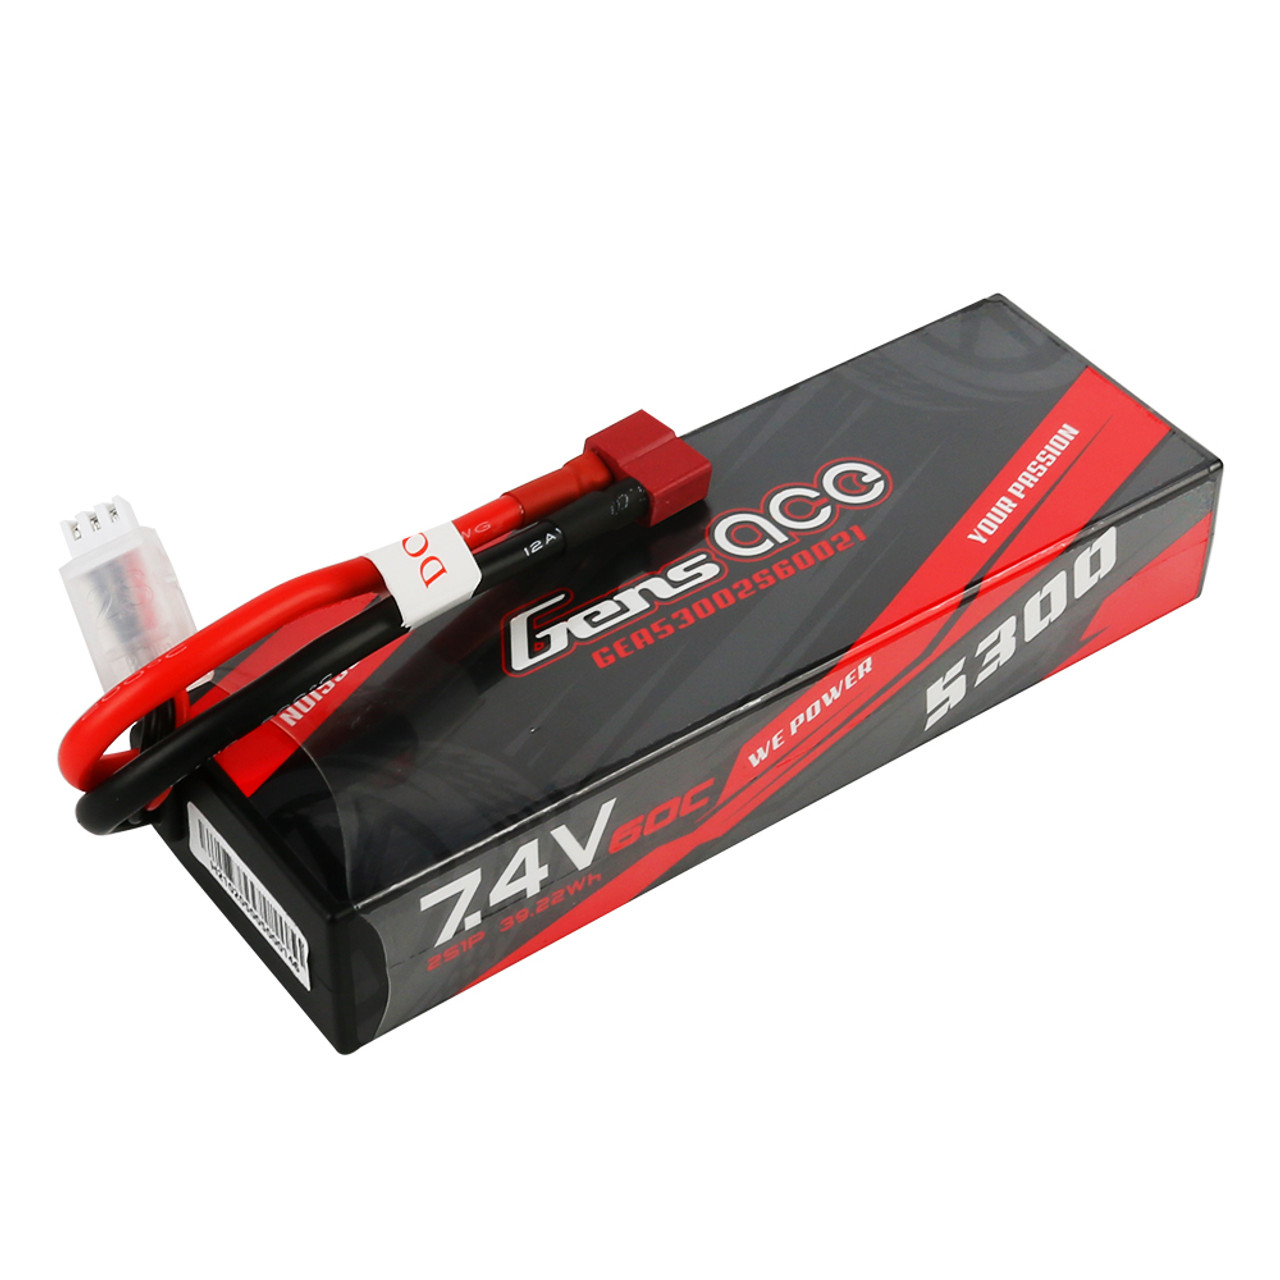 Tamiya Batterie RC LiPo 6500 mAh 7,4 V 45C